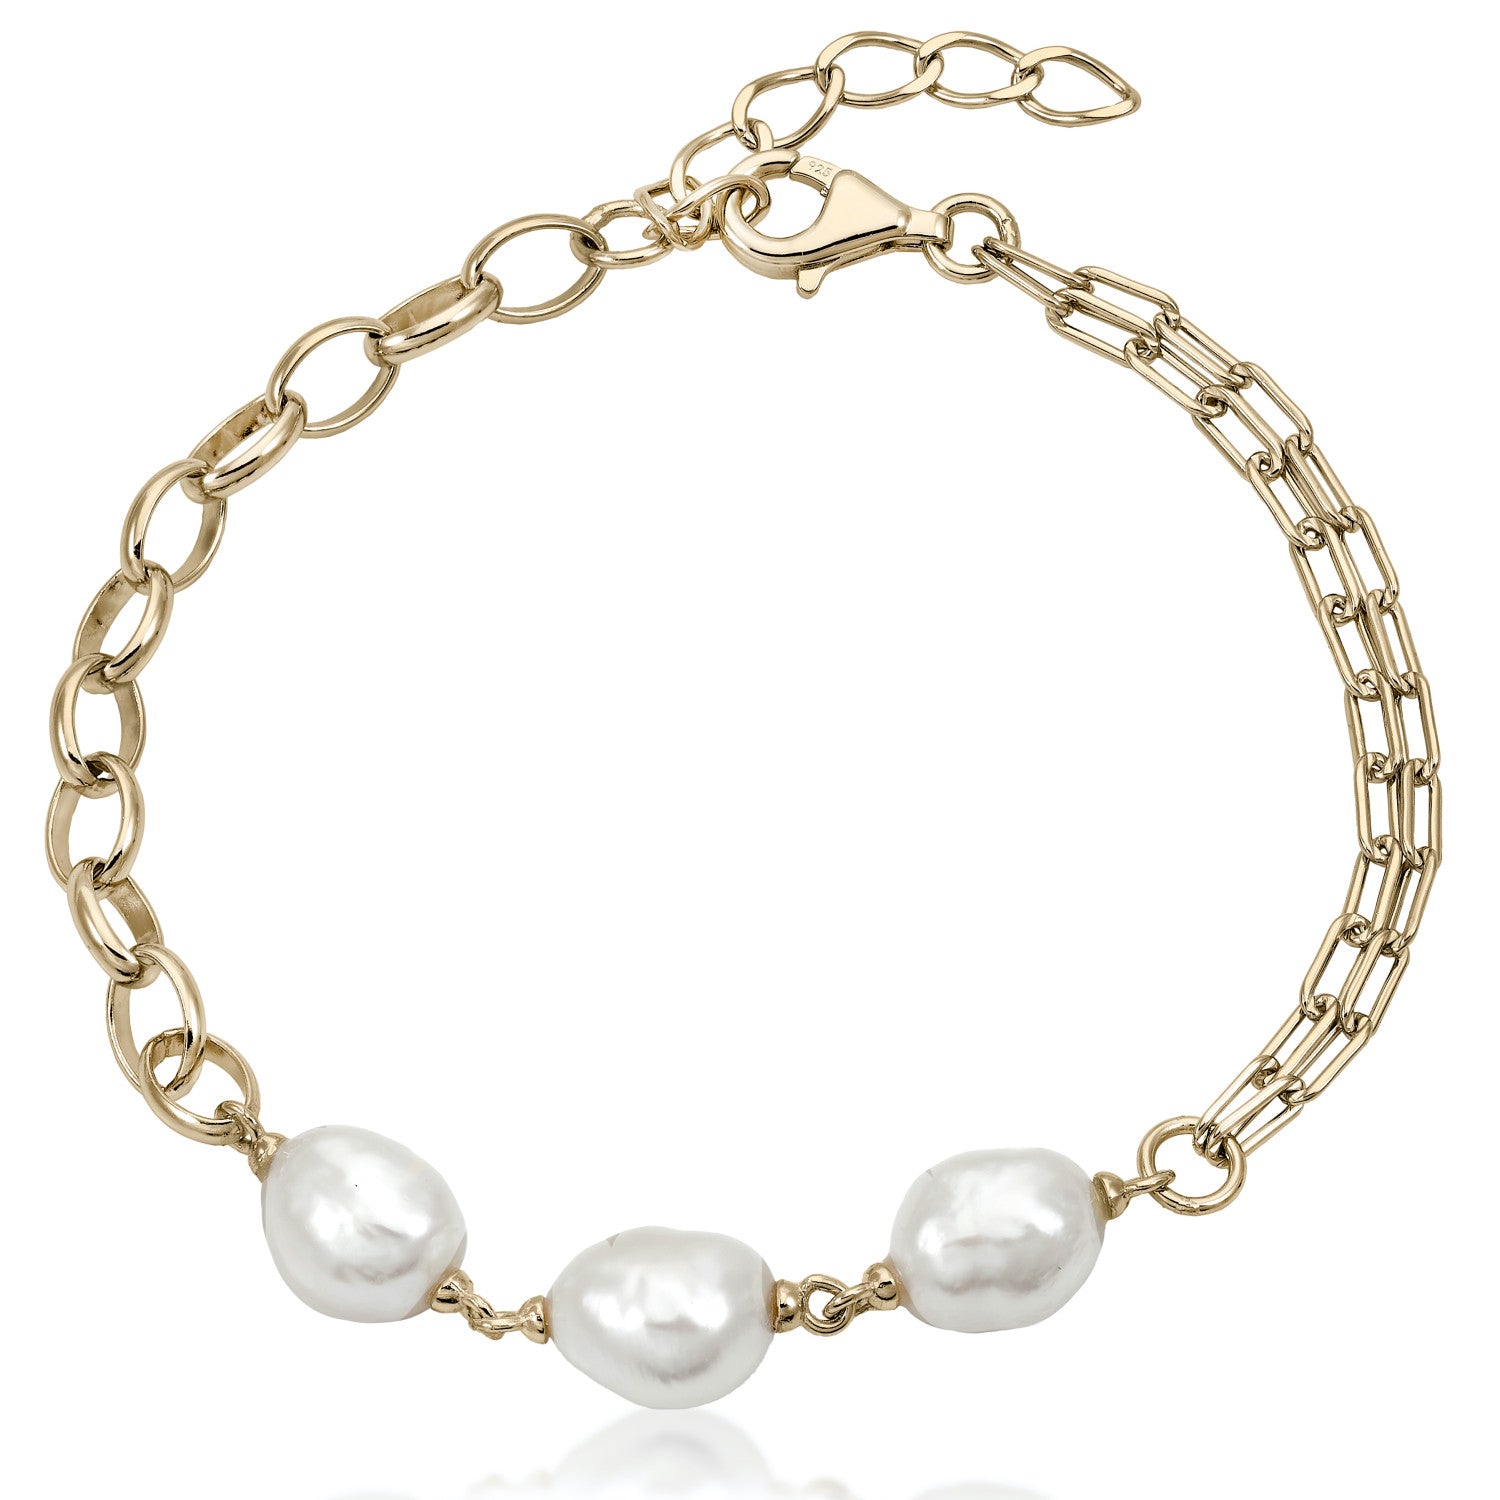 Pulseras perlas de plata bañada en oro diseño eslabones